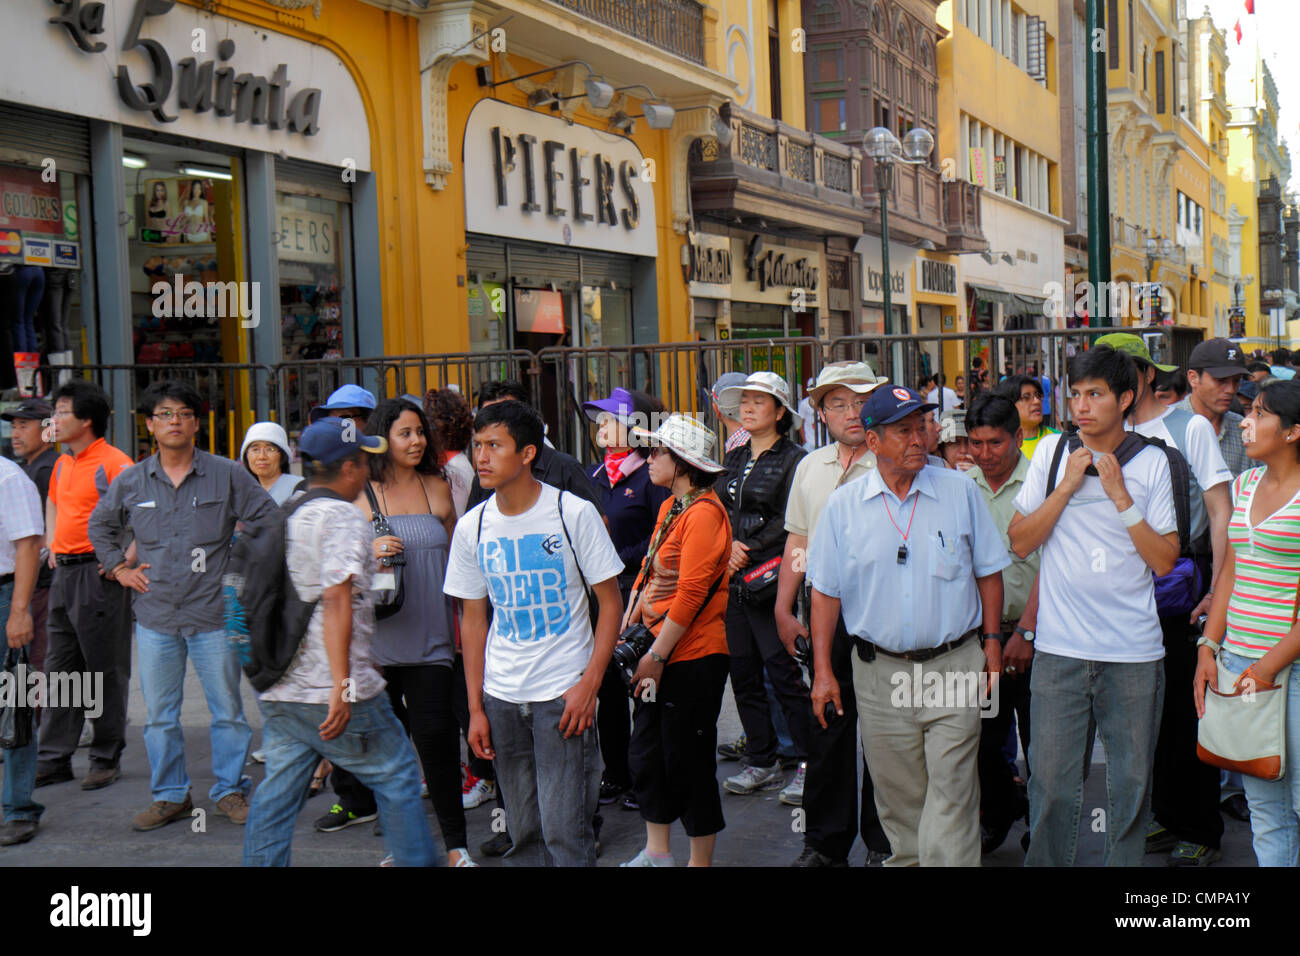 Lima Peru, Jiron de la Union, historisches Viertel, toronal, Promenade, Fußgängerzone, Shopping Shopper Shopper shoppen shoppen Geschäfte Markt Märkte kaufen verkaufen, re Stockfoto